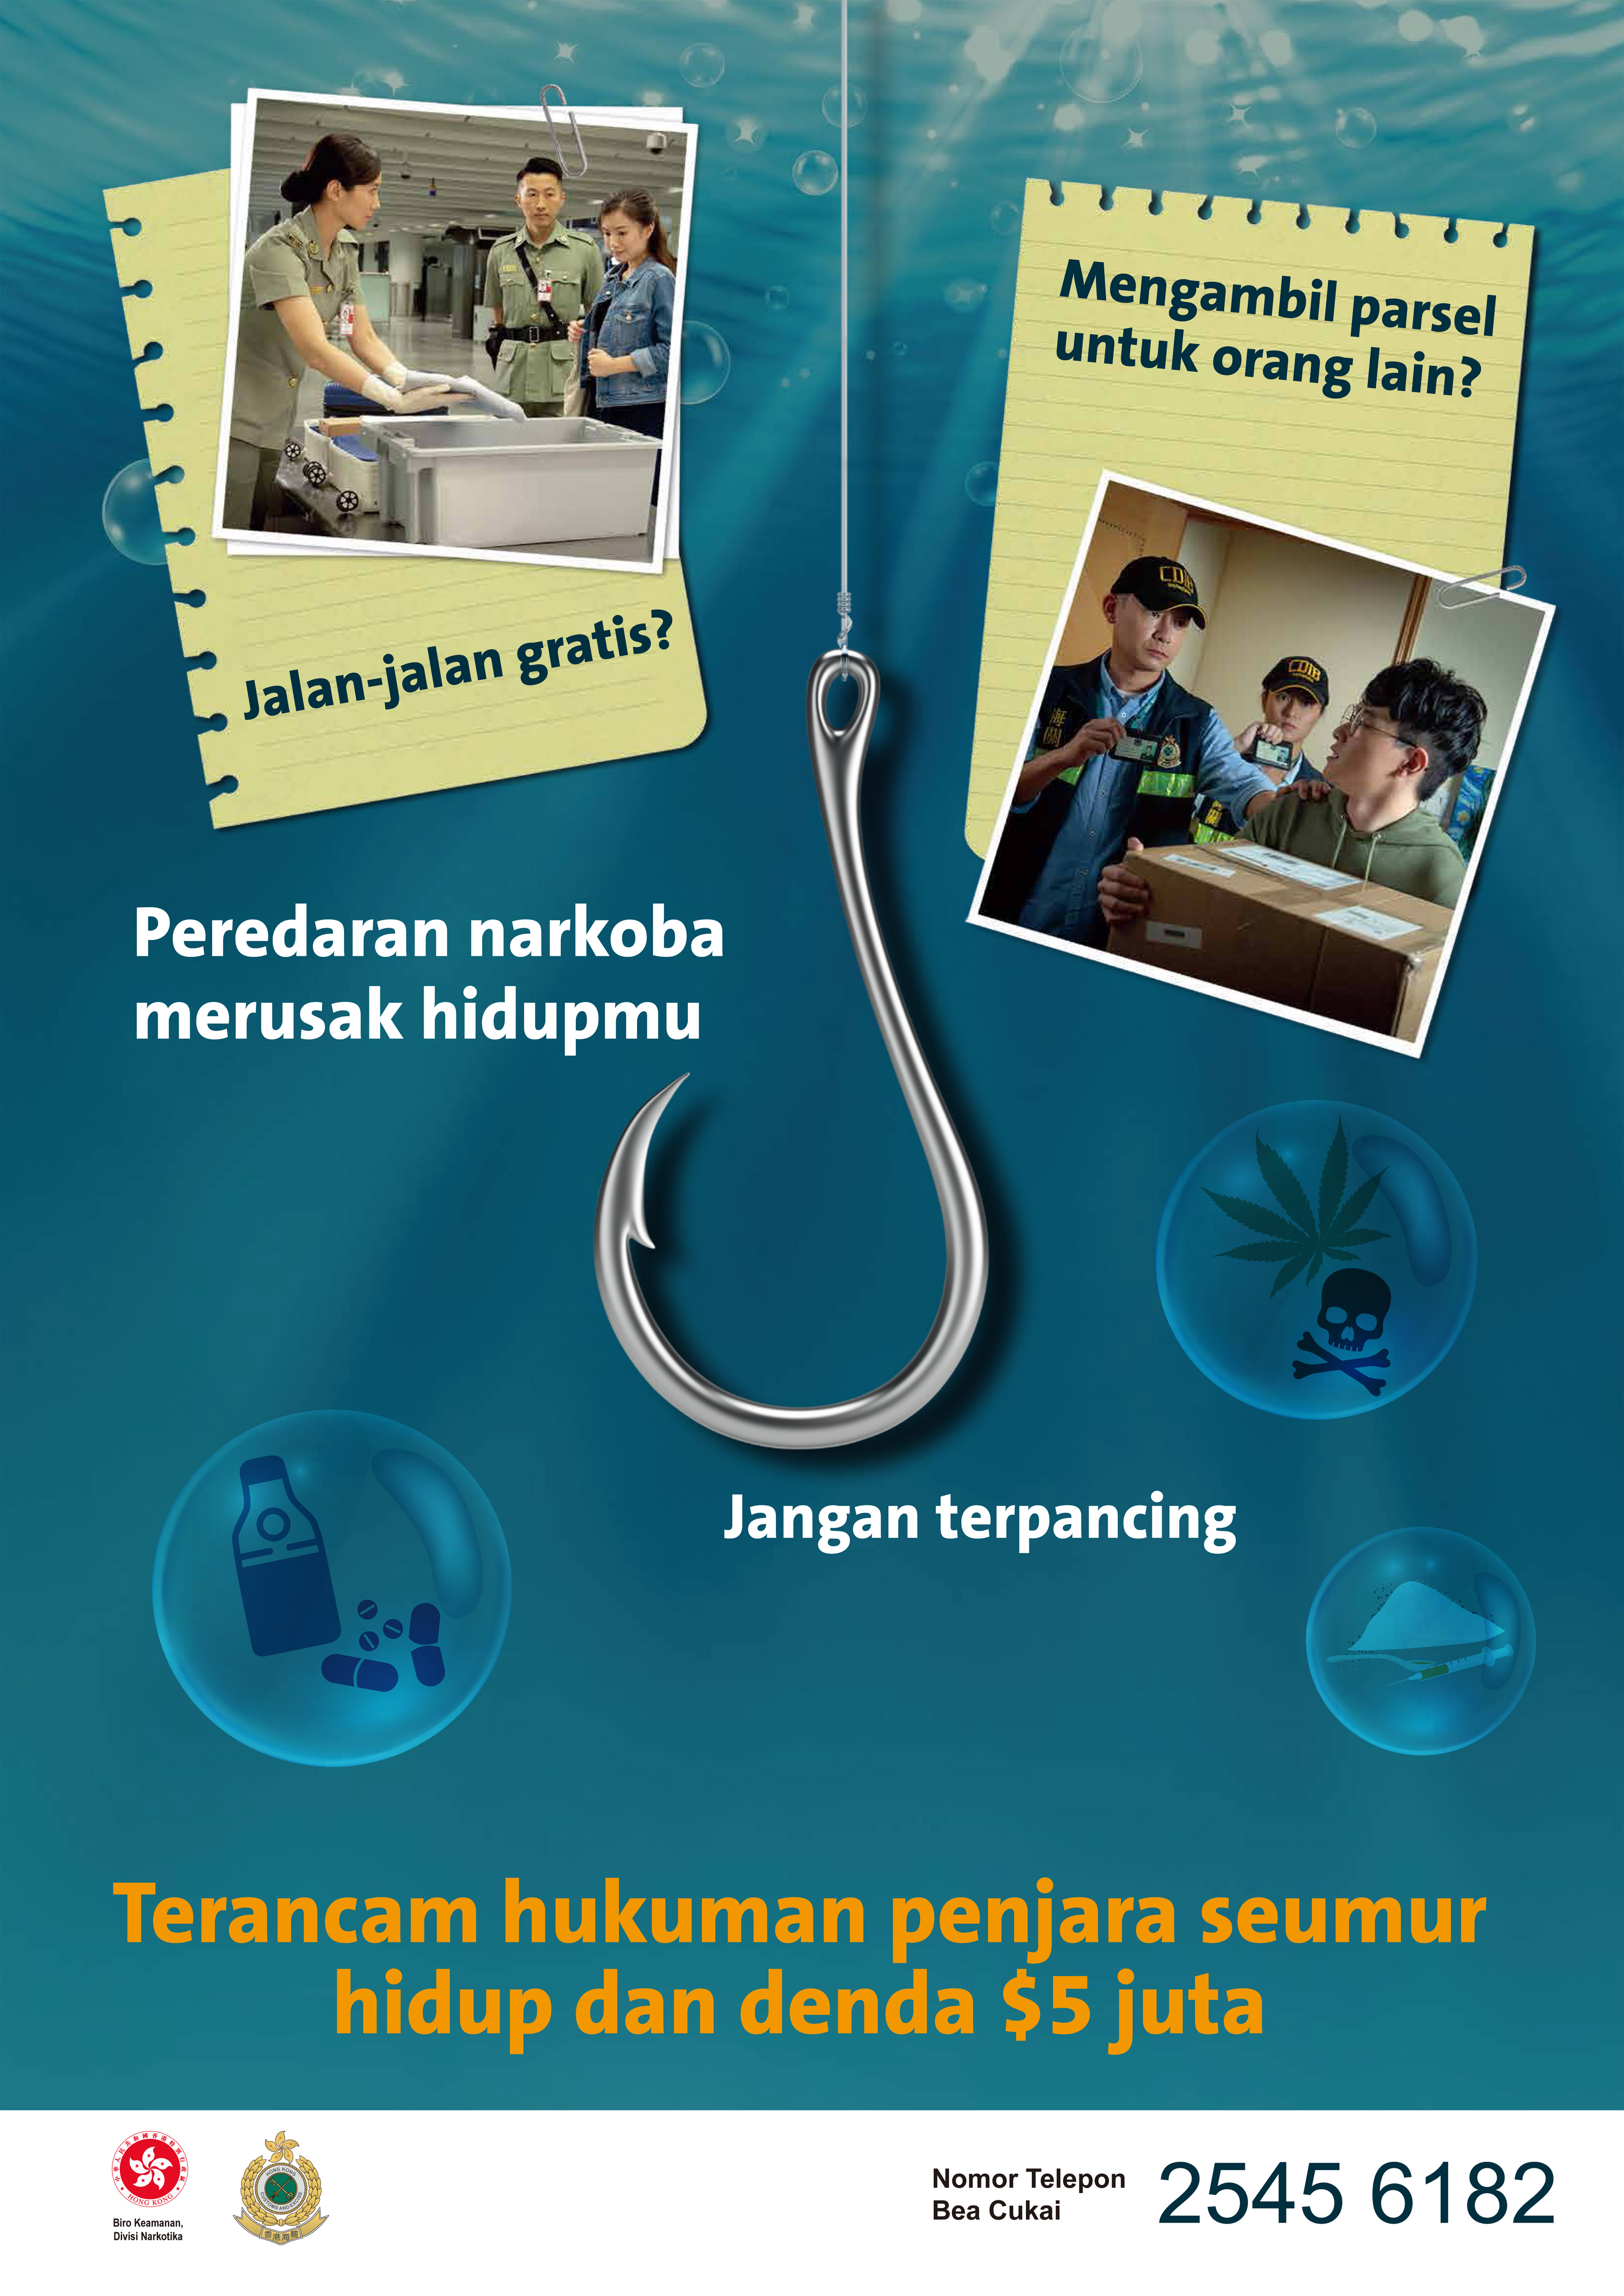 禁毒海报「贩毒诱害 切勿上钓」－ 印尼文版本